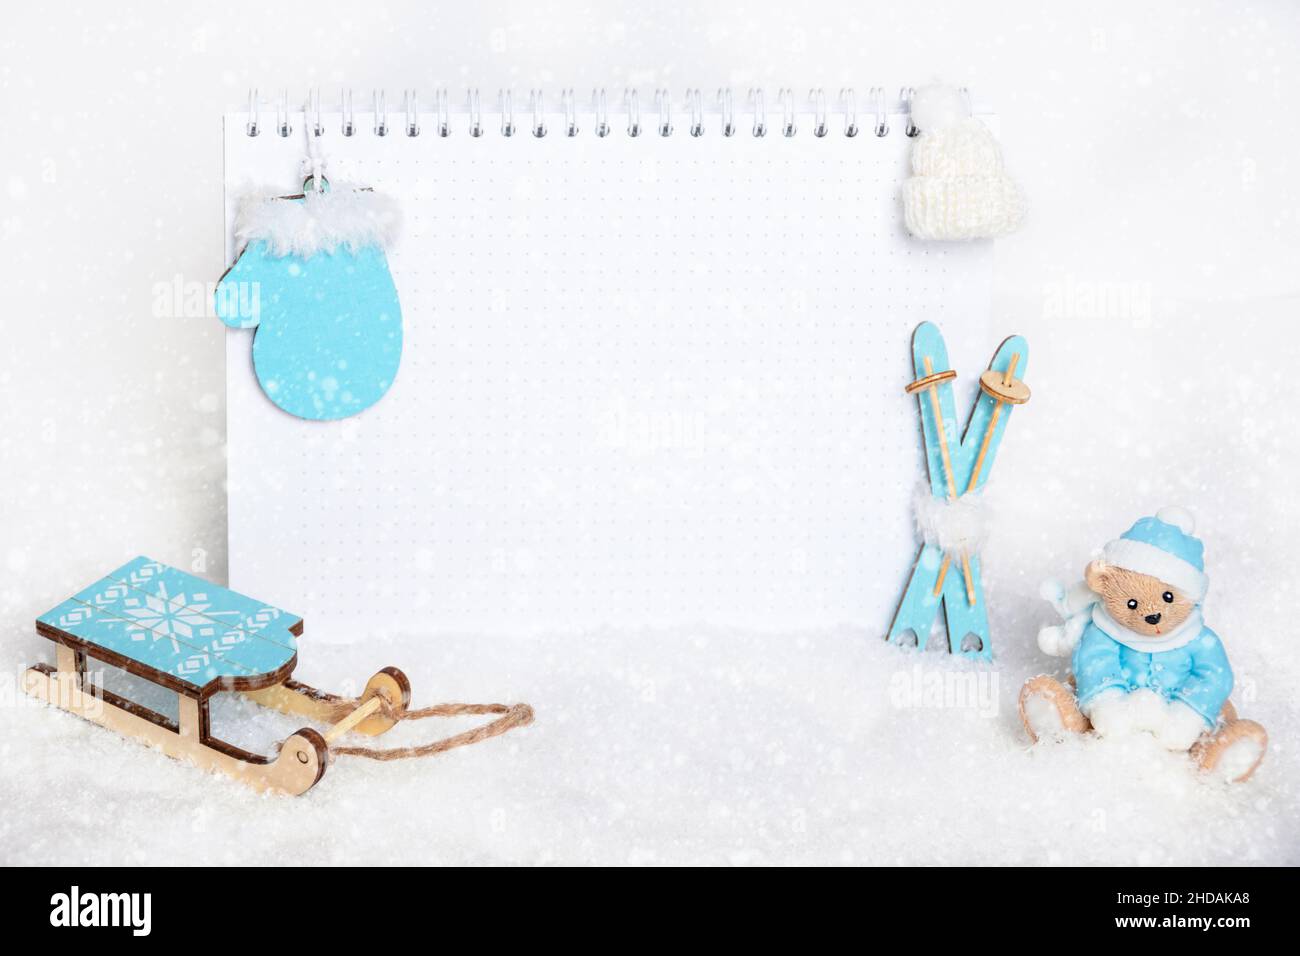 Tempo per le vacanze invernali. Taccuino vuoto, orsacchiotto che scolpisce le palle di neve, sci blu di legno giocattolo, slitte, guanti e cappello bianco su sfondo nevoso, co Foto Stock